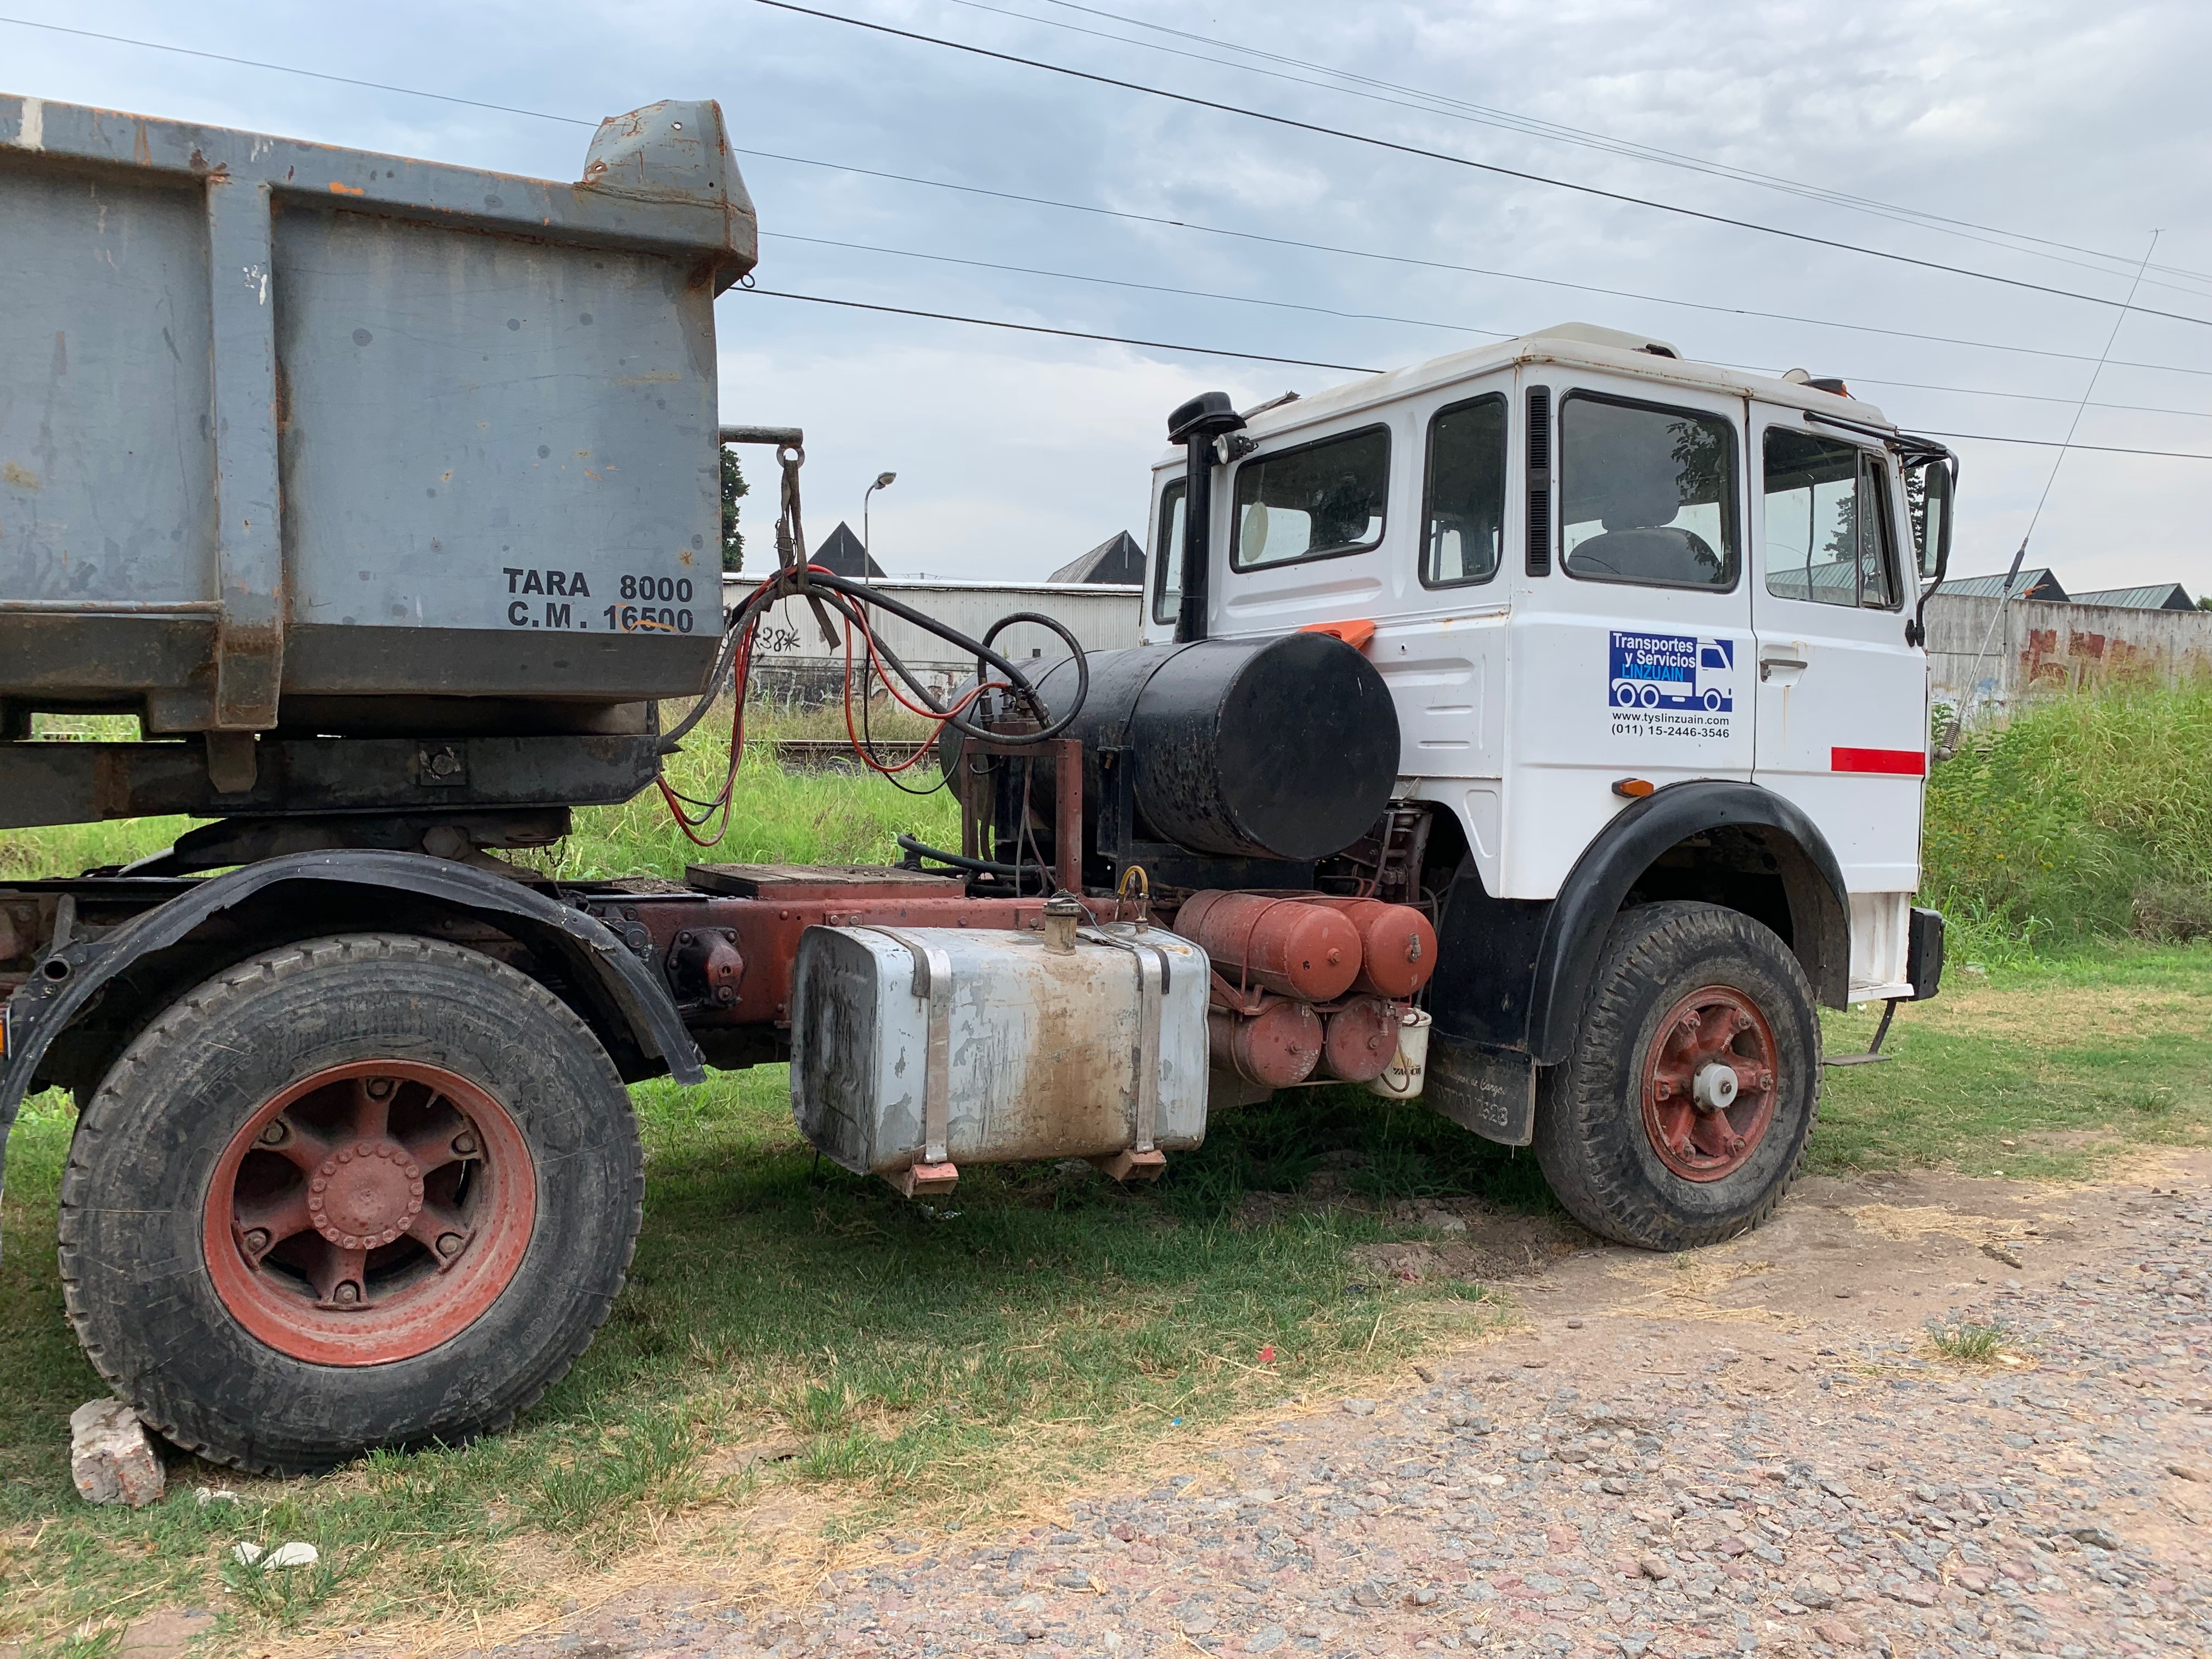 Camion tractor con batea volcadora / Equipo completo